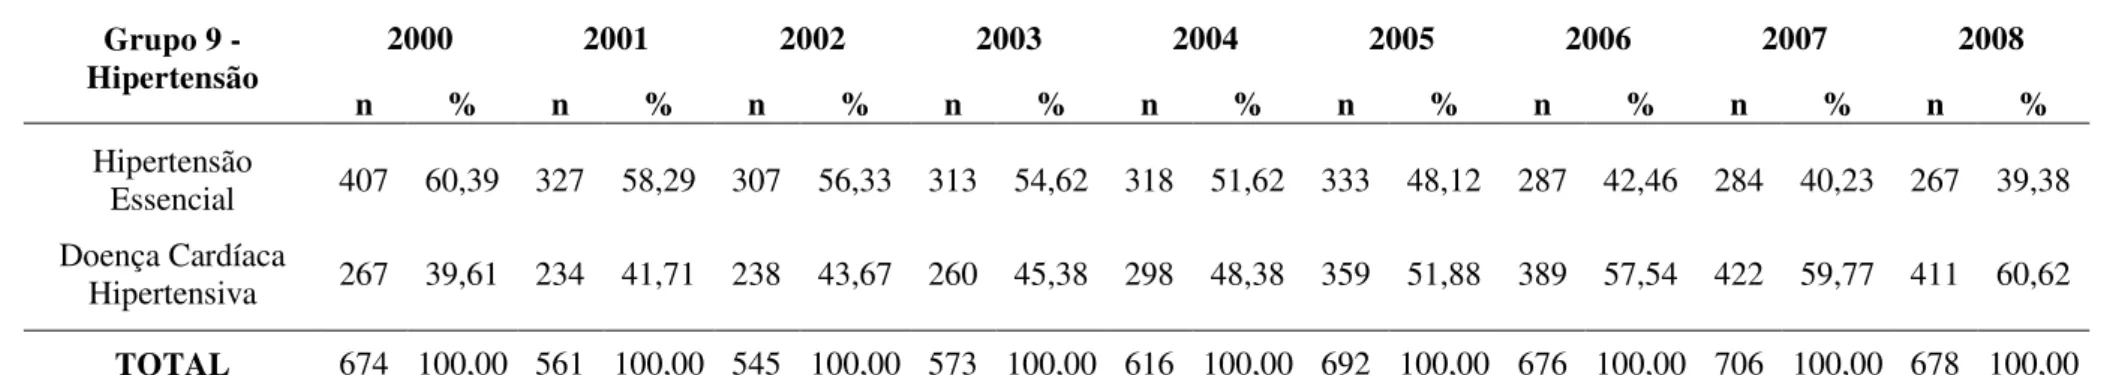 Tabela 4  –  Distribuição numérica e percentual das internações categorizadas no Grupo  –  9 Hipertensão de pessoas residentes em Ribeirão Preto ocorridas  no período de 2000 a 2008 segundo subgrupo e ano de ocorrência